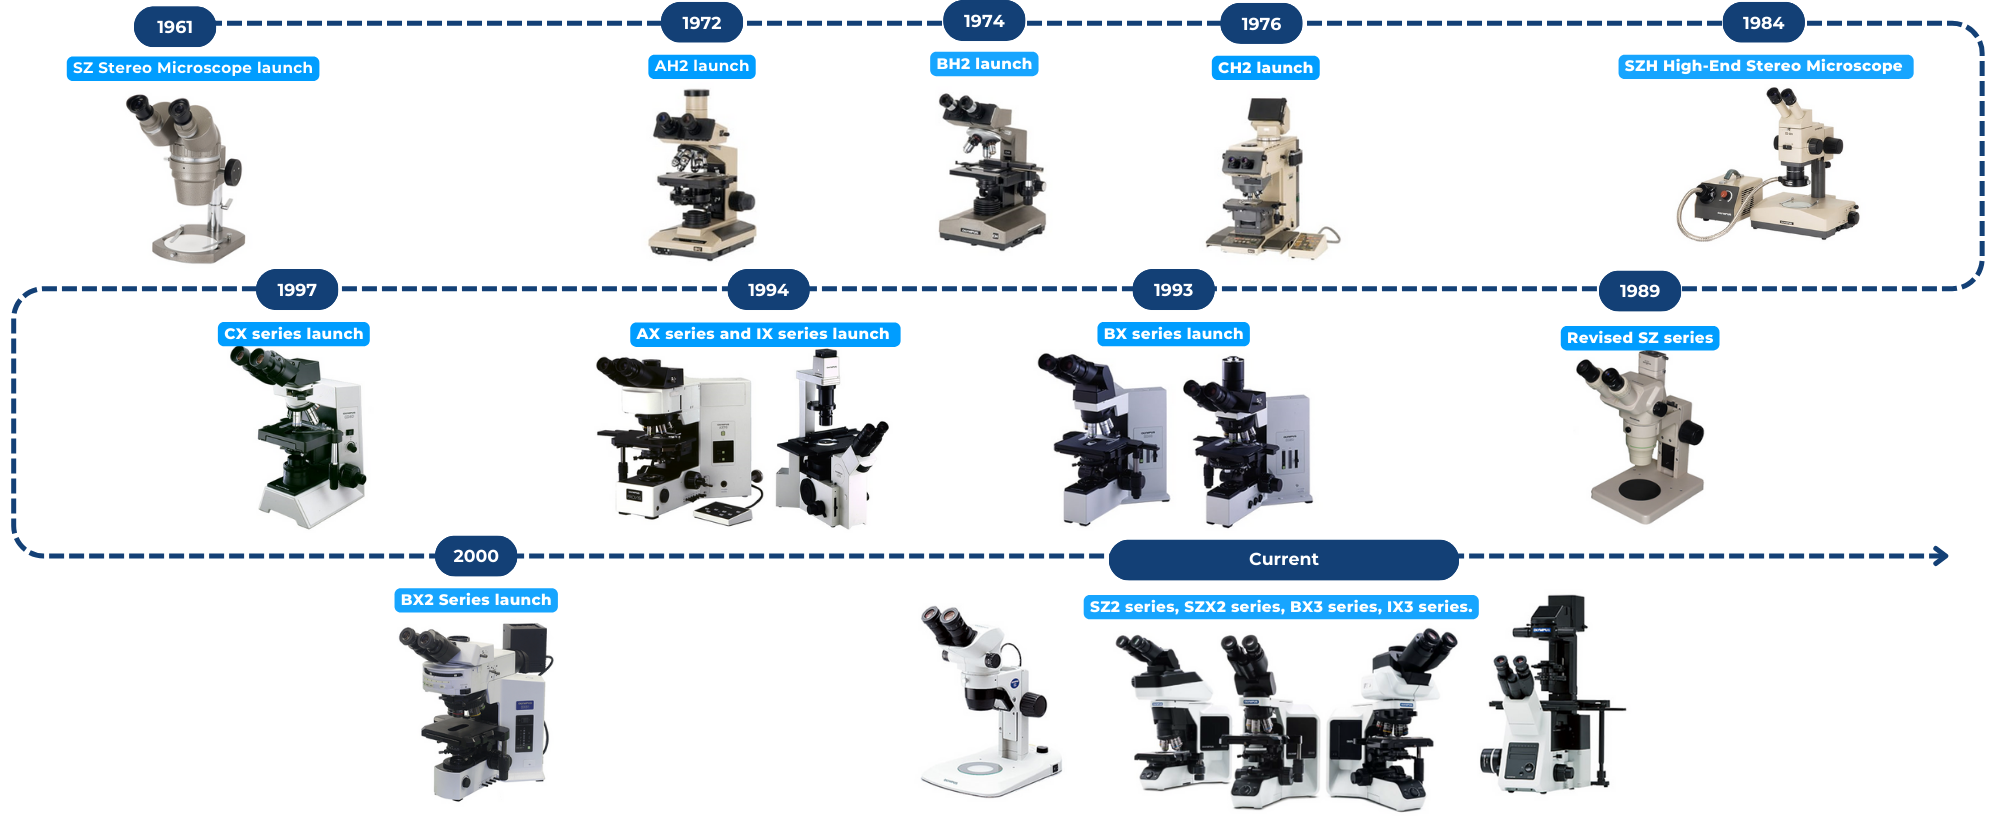 Olympus microscopy timeline